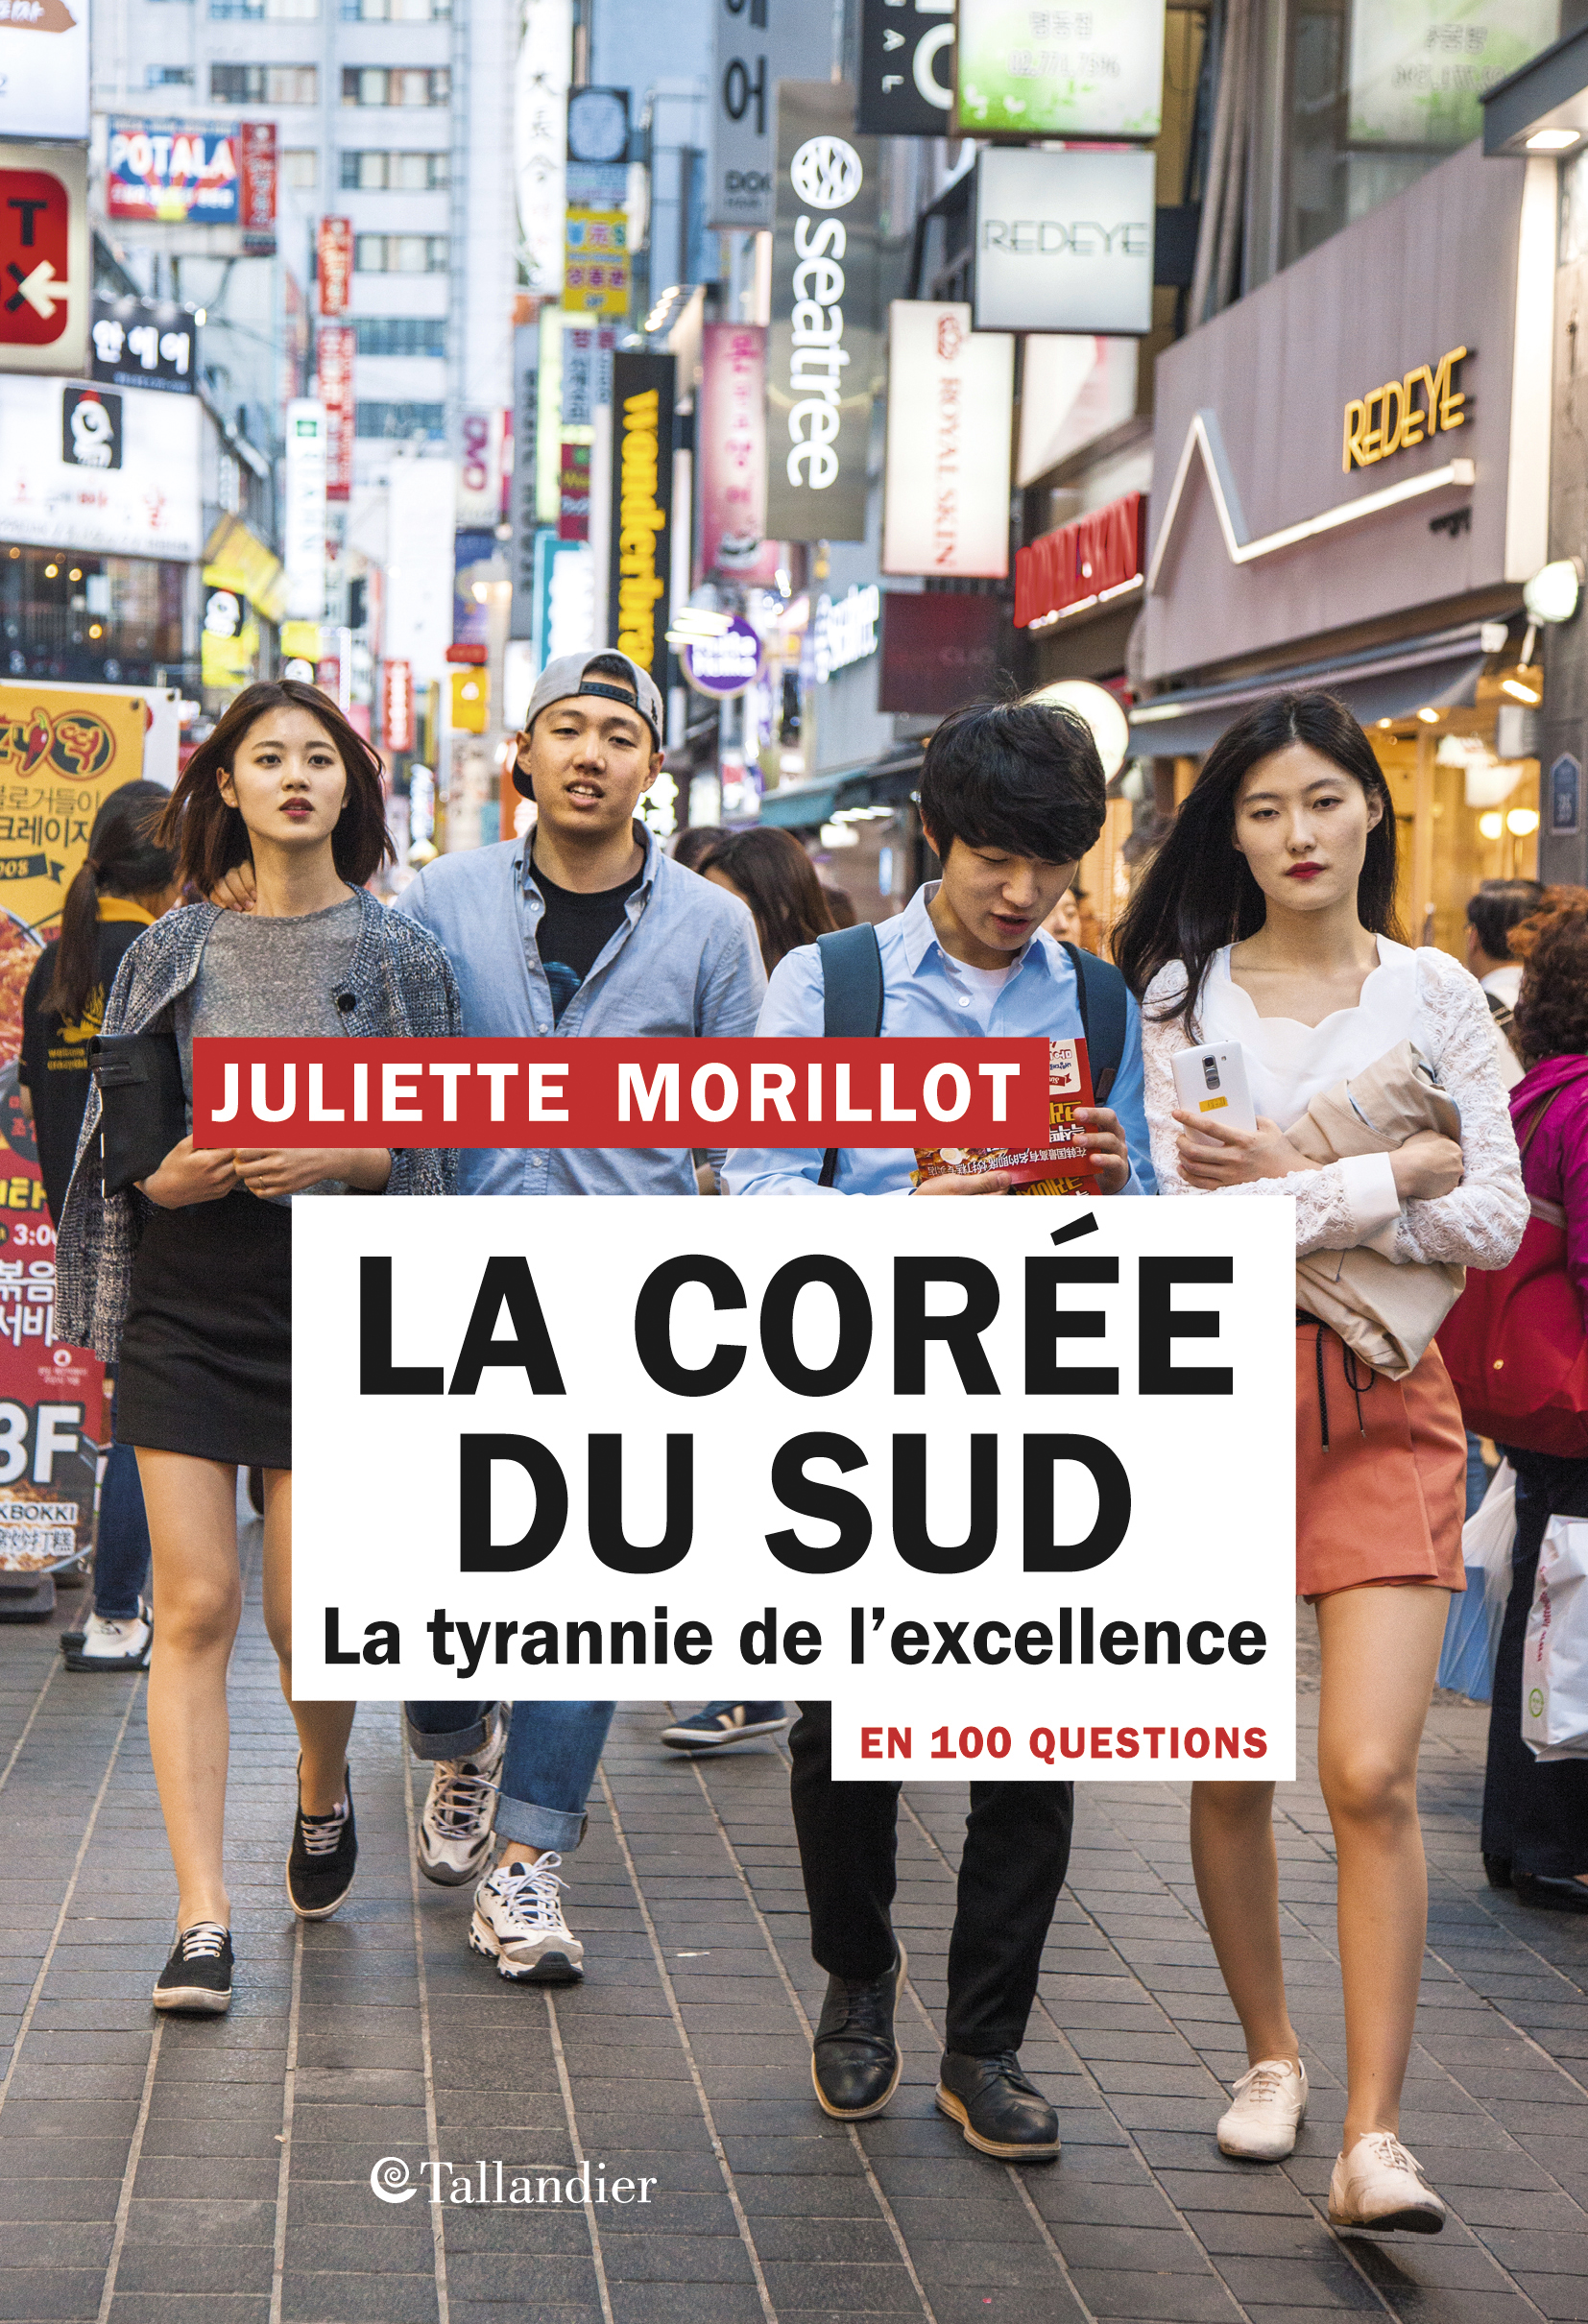 La Corée du Sud en 100 questions, la tyrannie de l’excellence, de Juliette Morillot paraît chez Tallandier.